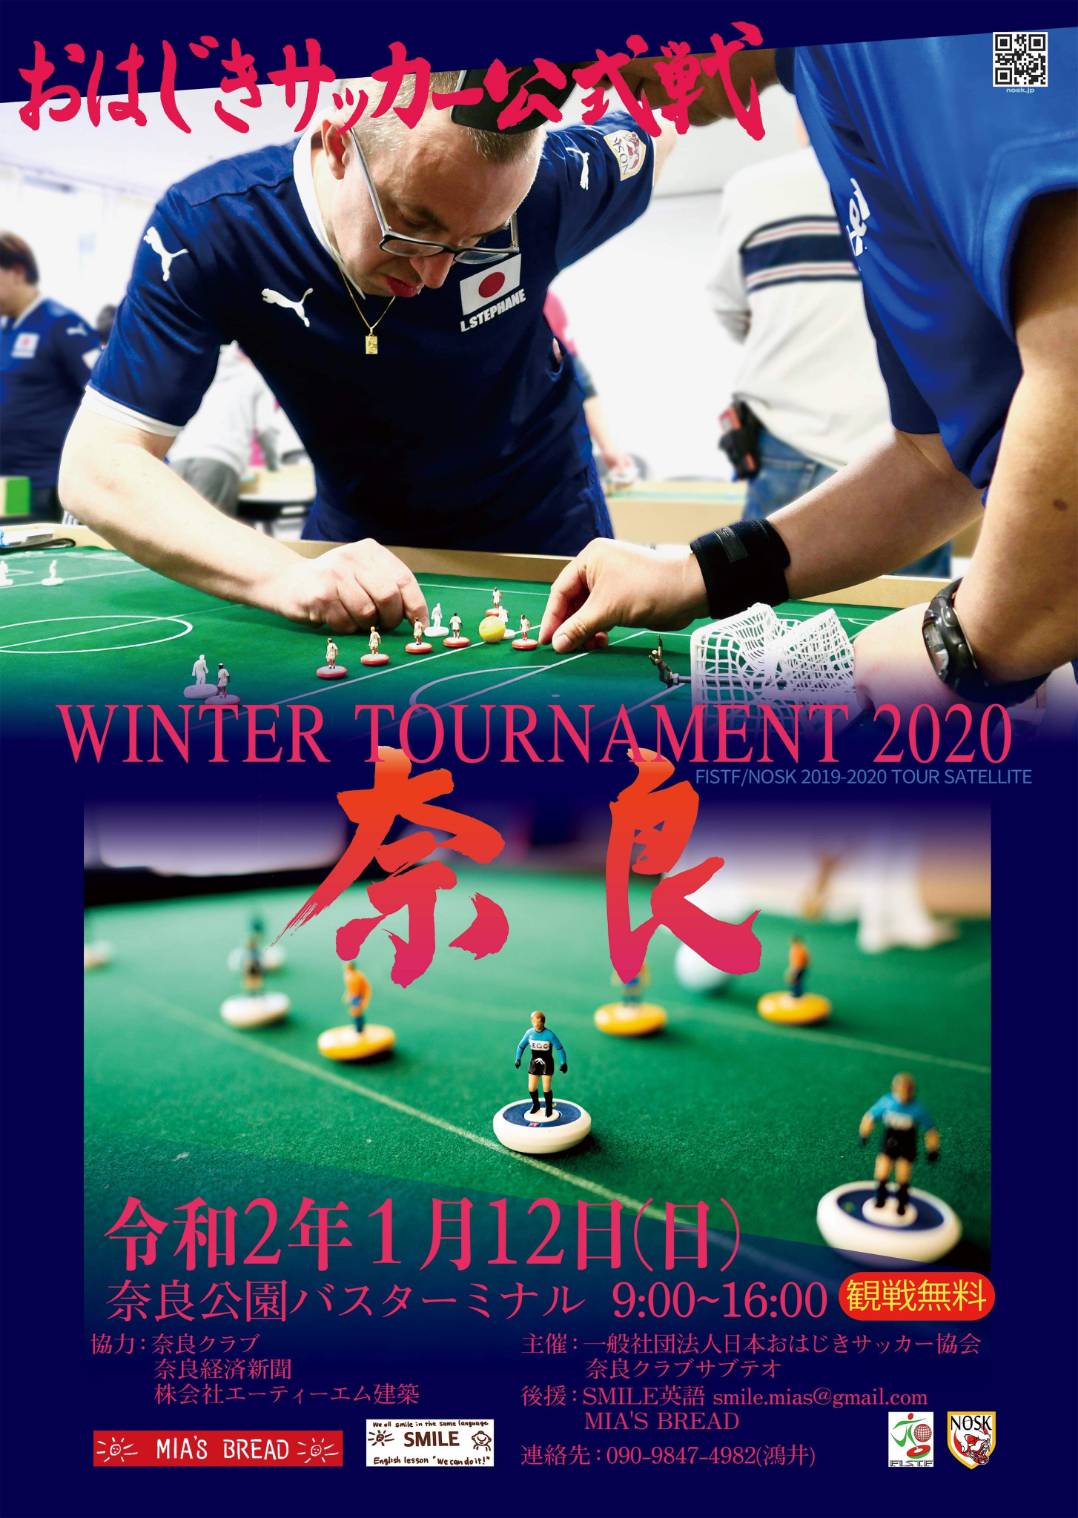 1 12 日 おはじきサッカー公式戦 Winter Tournament 奈良 参加のお知らせ 奈良クラブ Nara Club Official Site